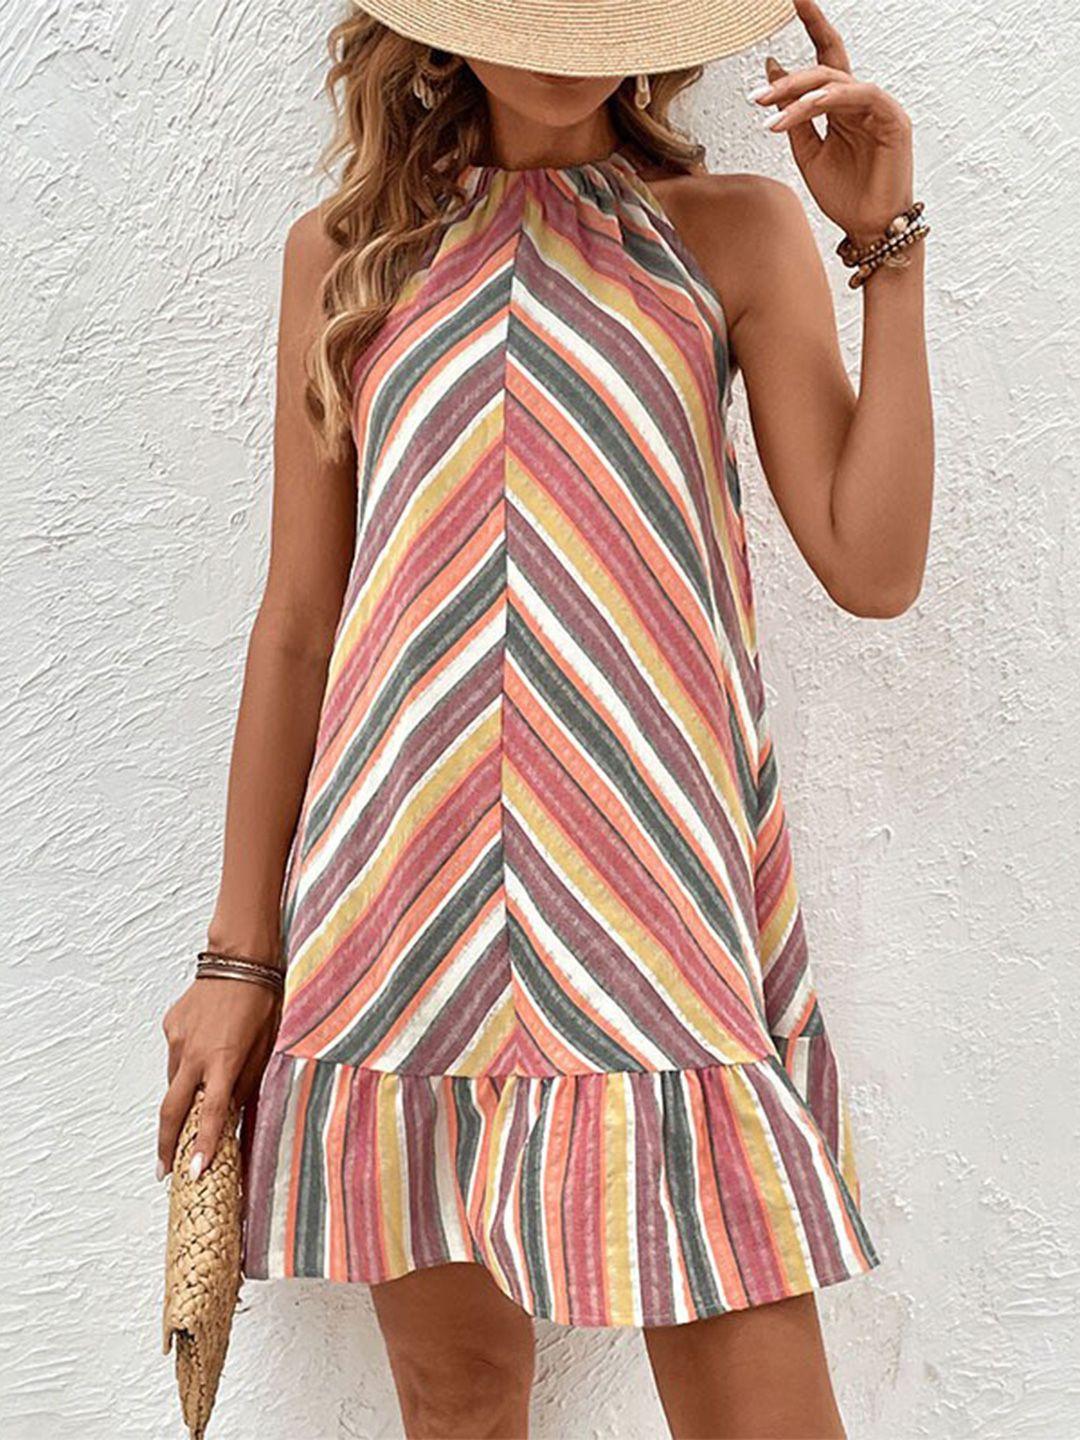 bostreet striped a-line dress